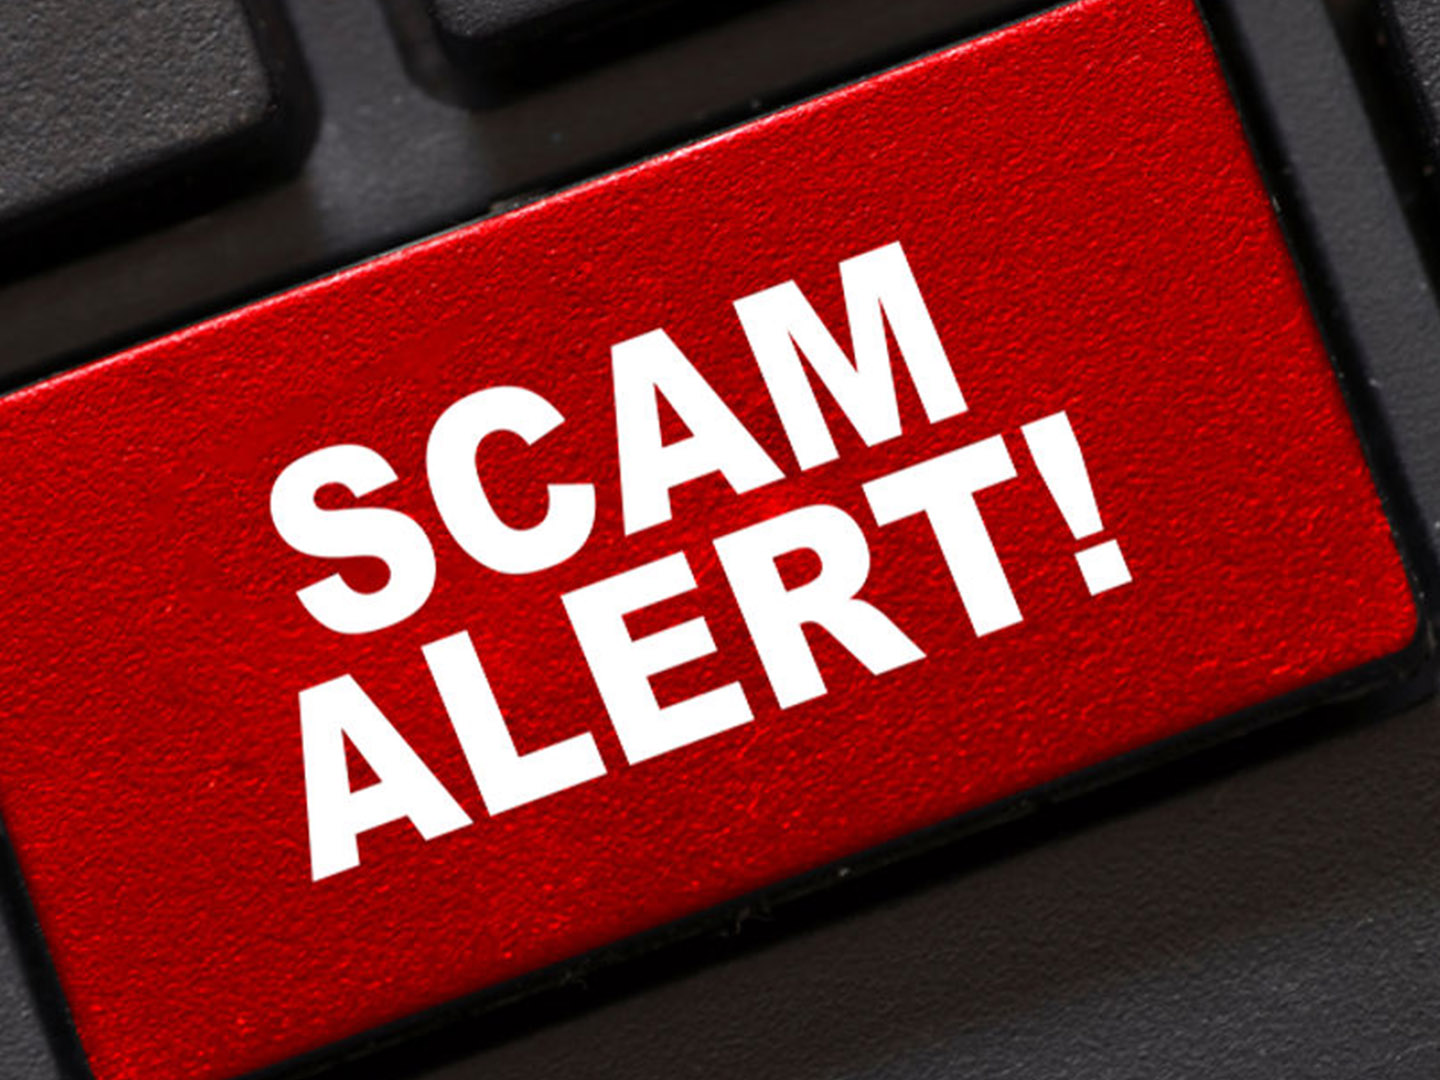 HMRC Scam Email Tax Refund Scam